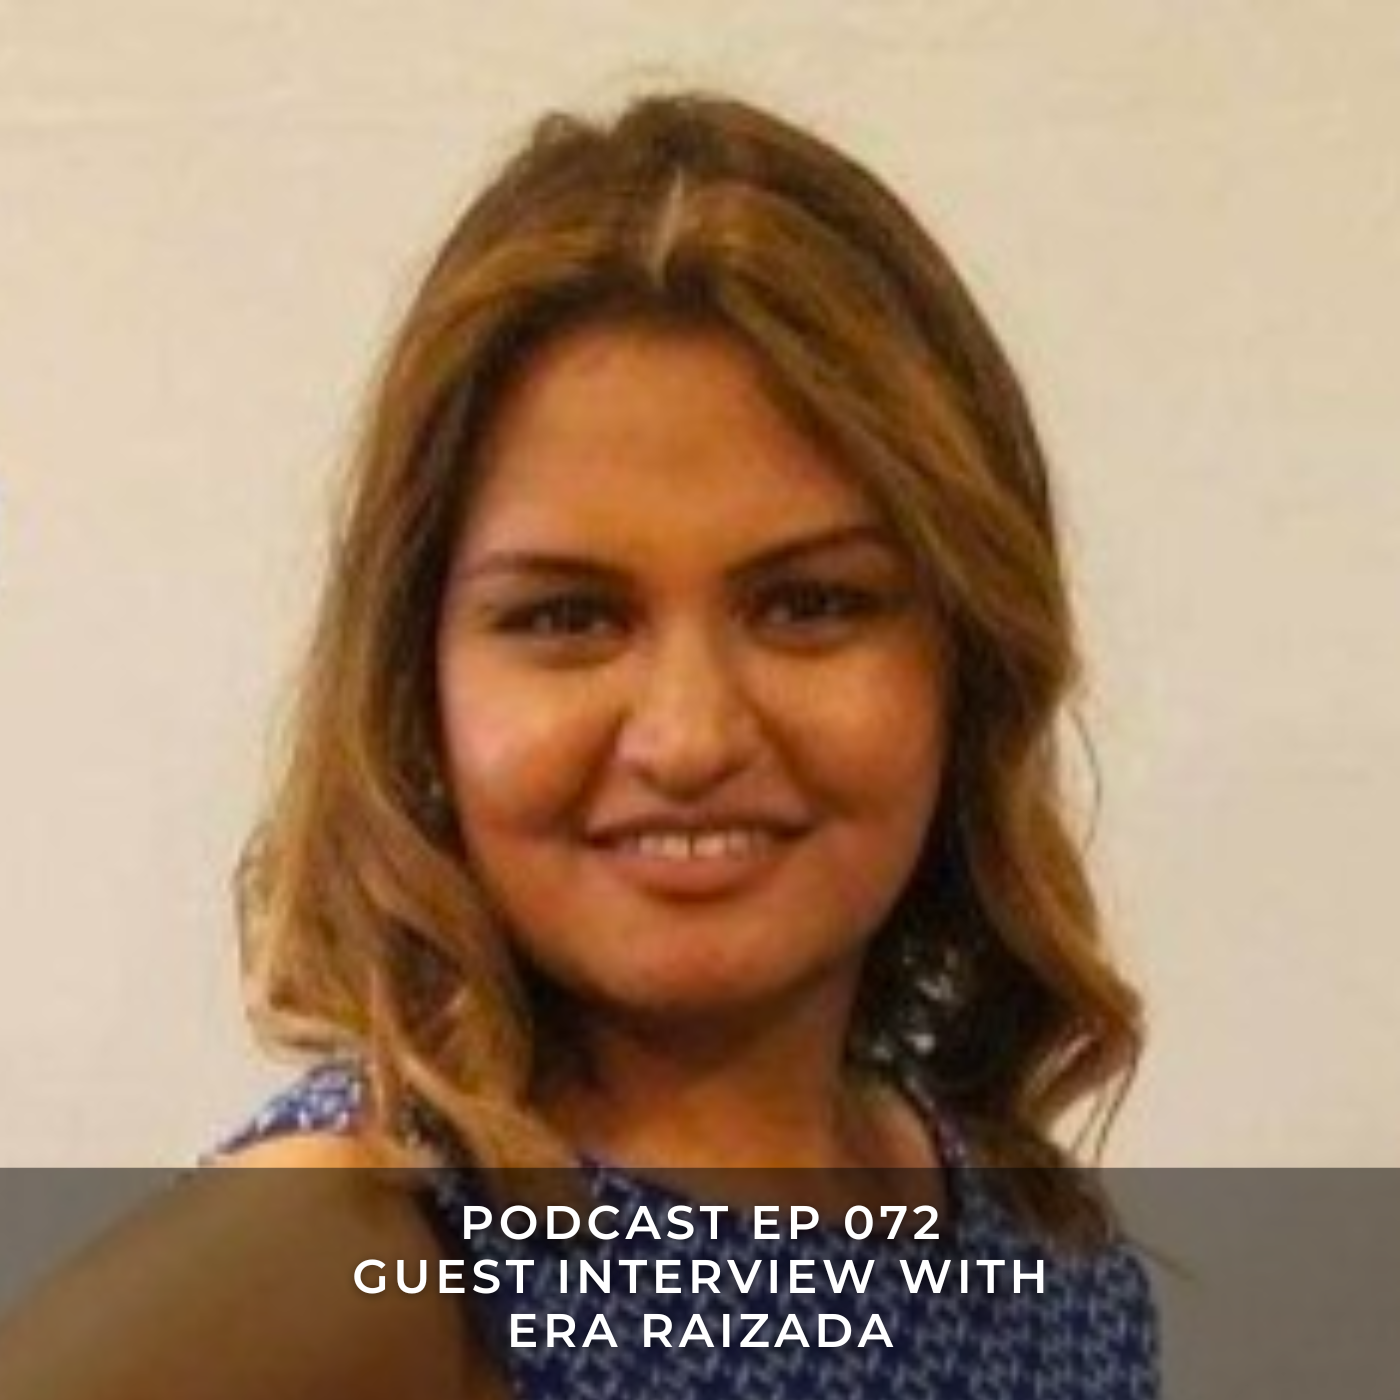 Guest Interview with Era Raizada